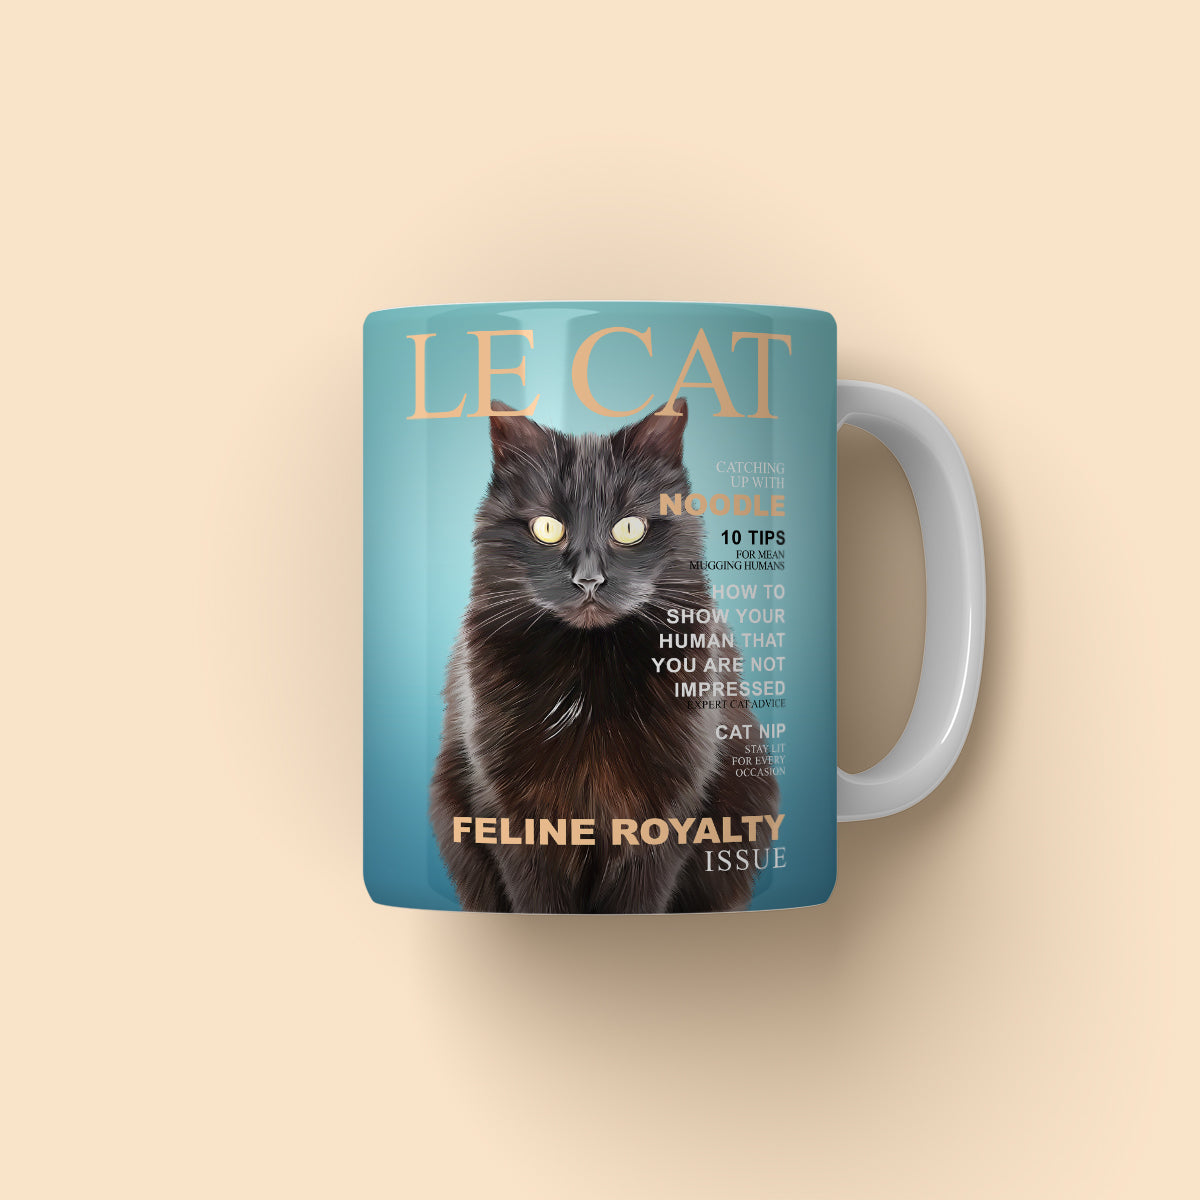 Le Cat: Custom Pet Coffee Mug